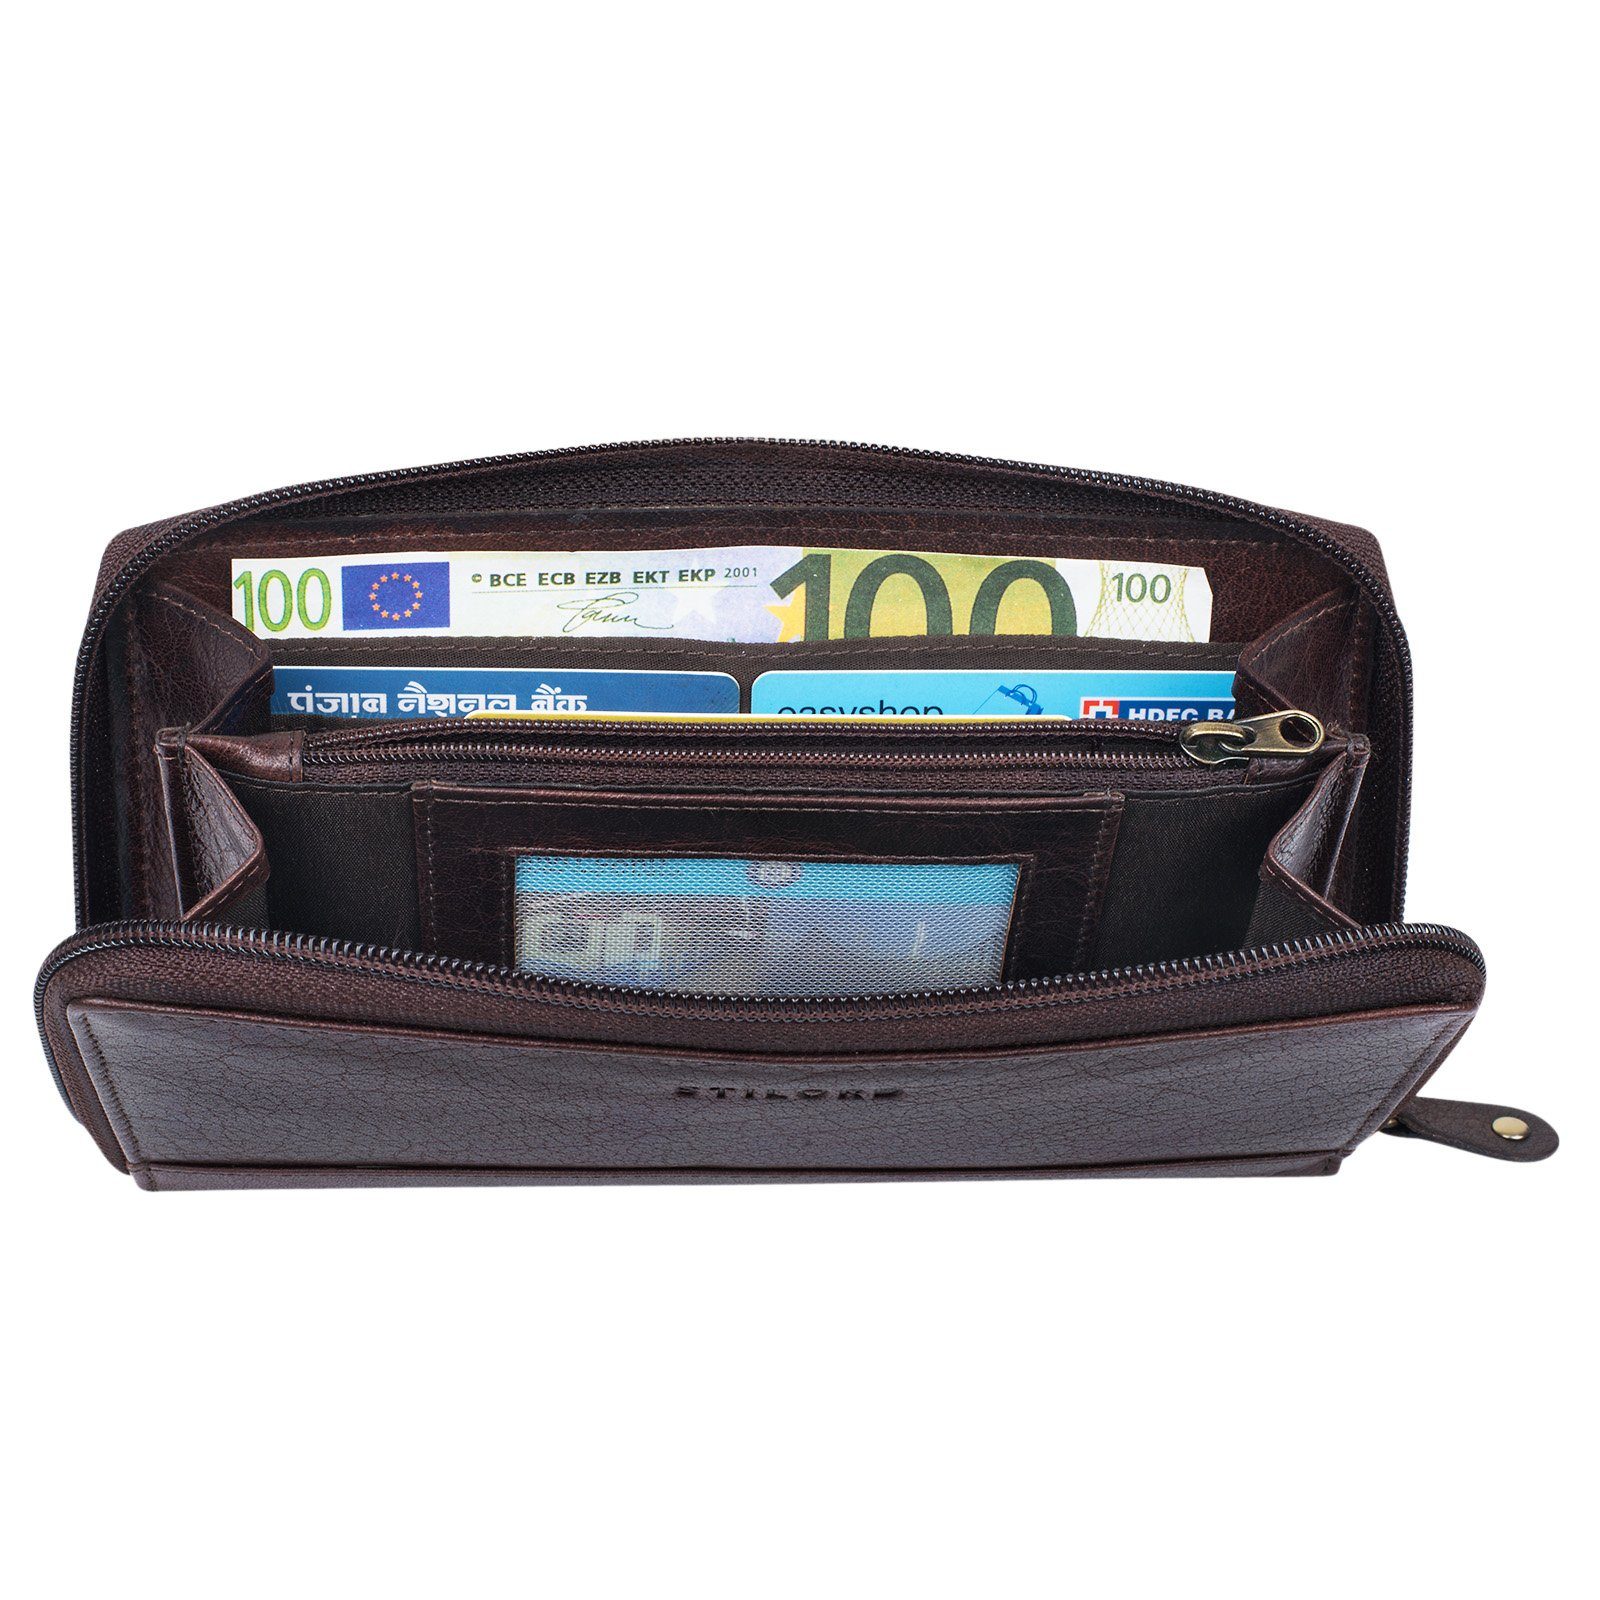 Damen "Saskia" mit Portemonnaie braun Geldbörse STILORD - Schutz samt RFID